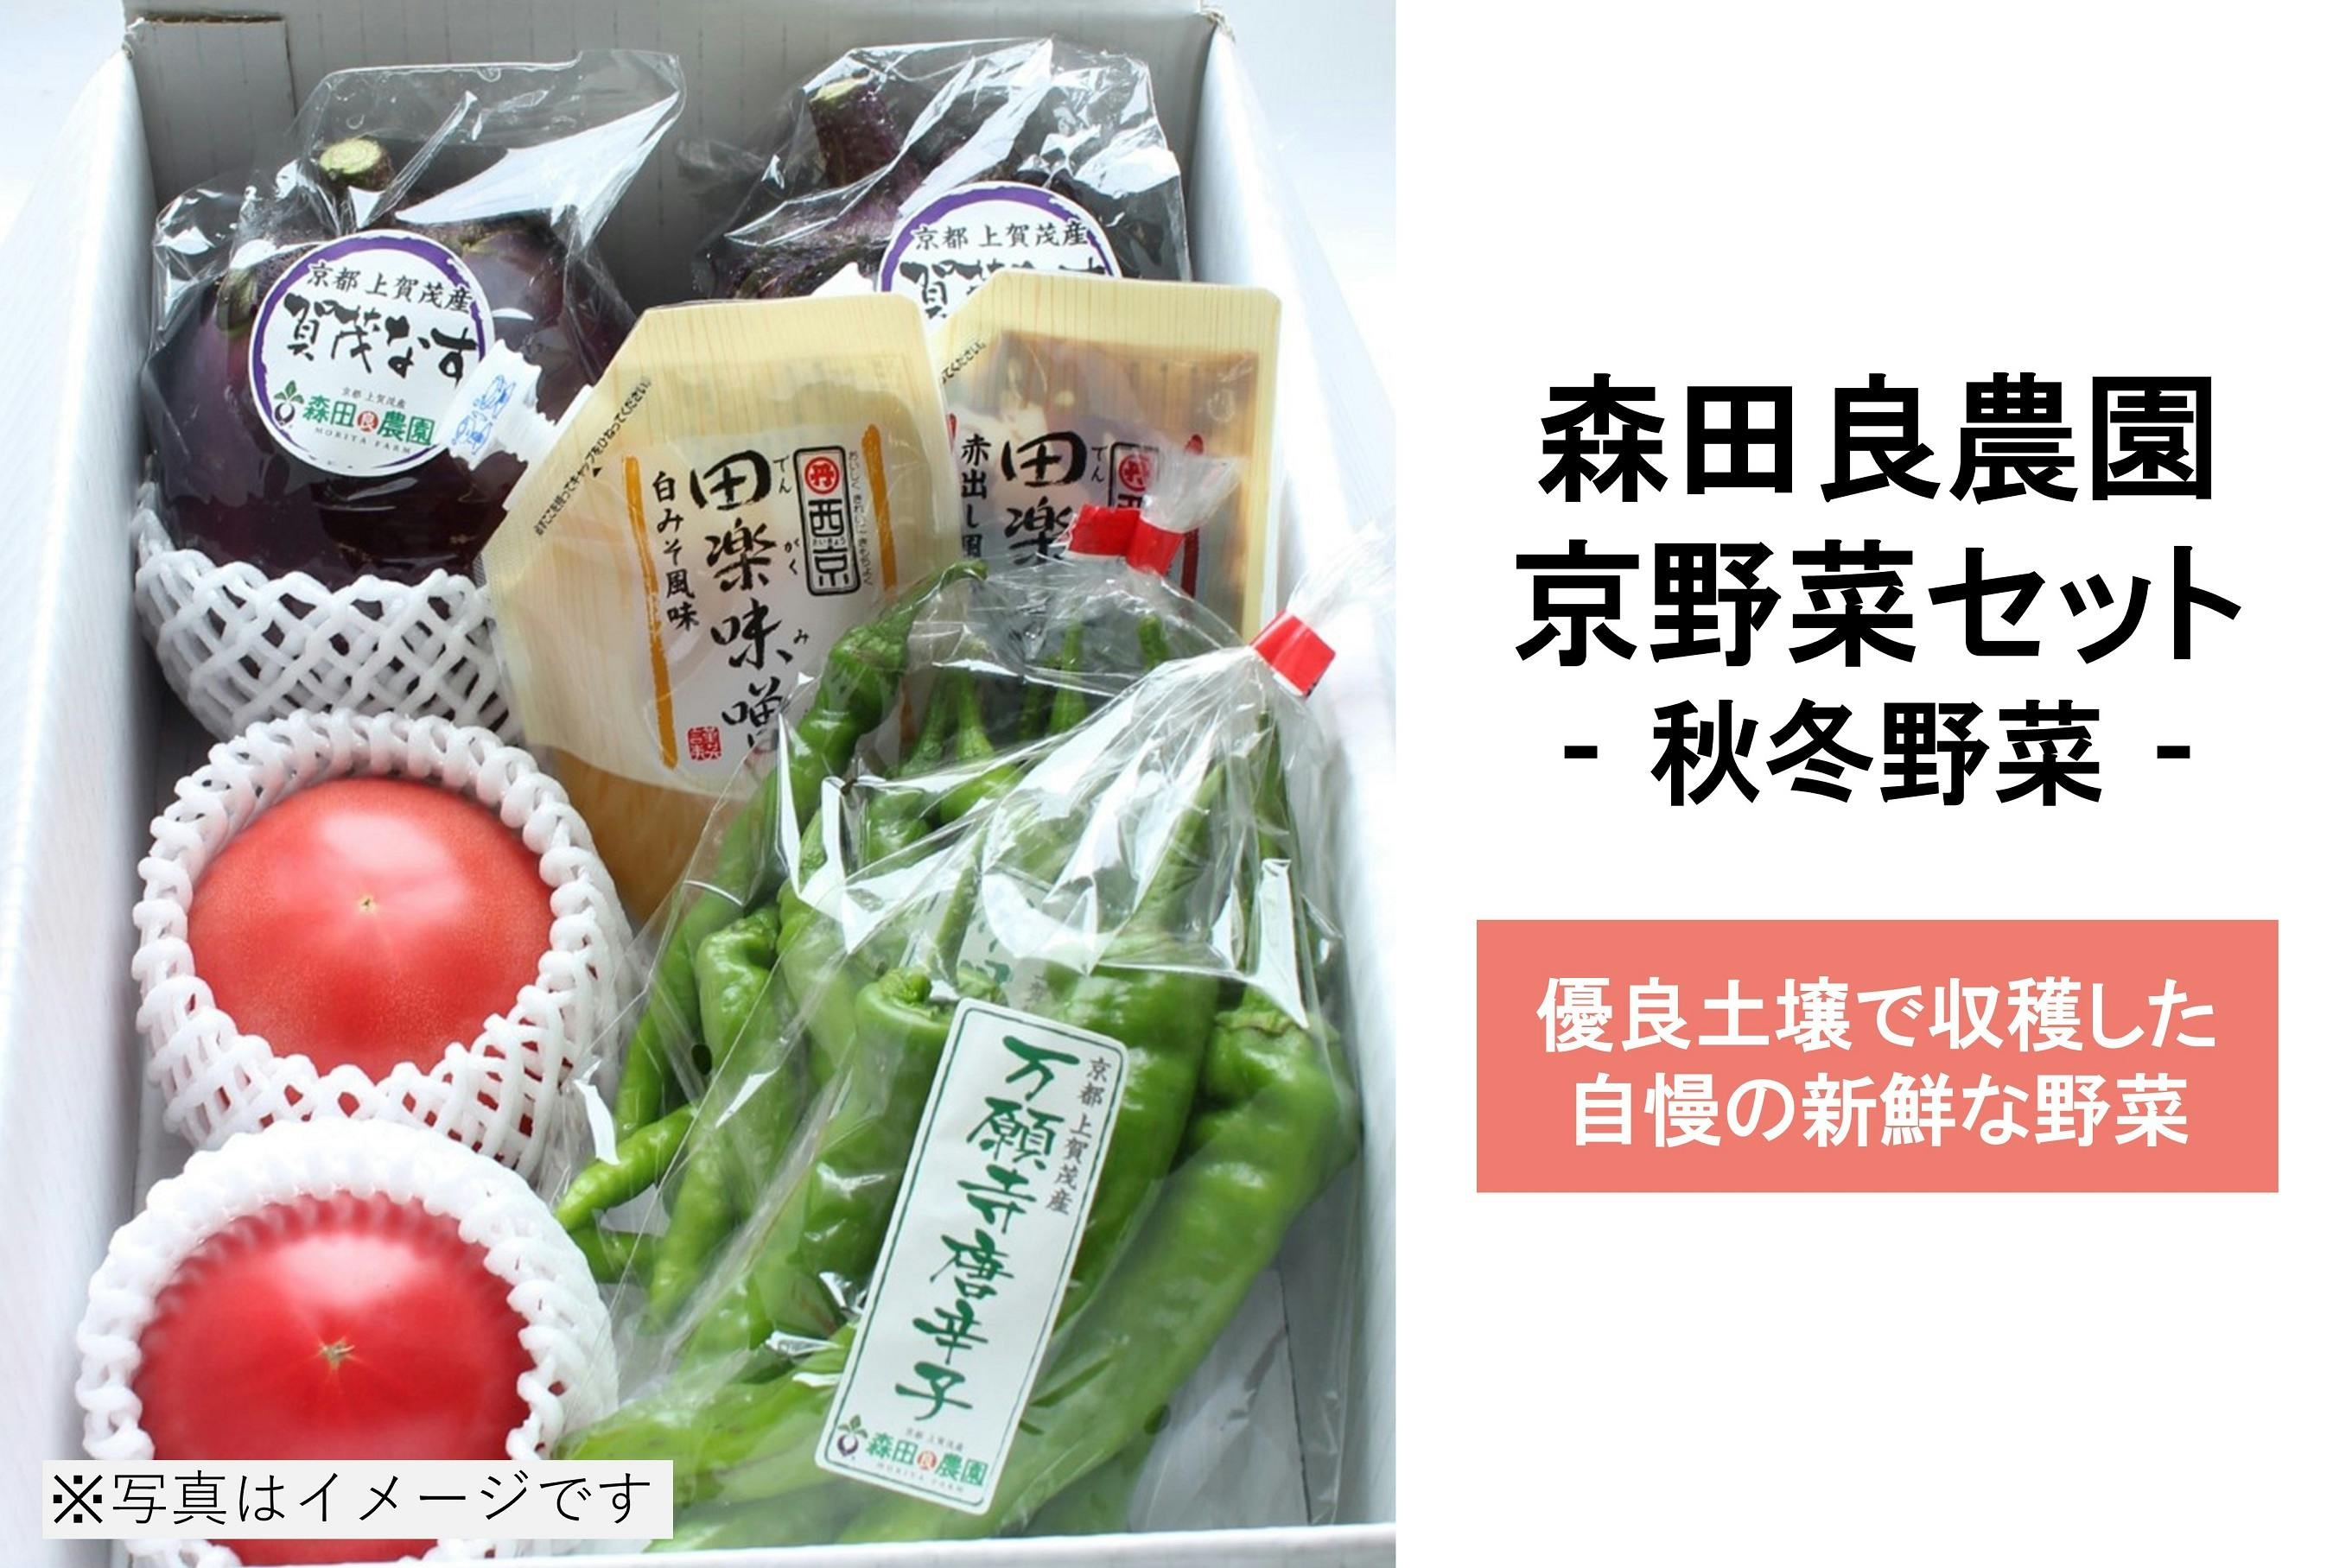 CAMPFIRE　京都上賀茂からお届けします！～循環型農業で採れた美味しい野菜を知ってほしい～　(キャンプファイヤー)